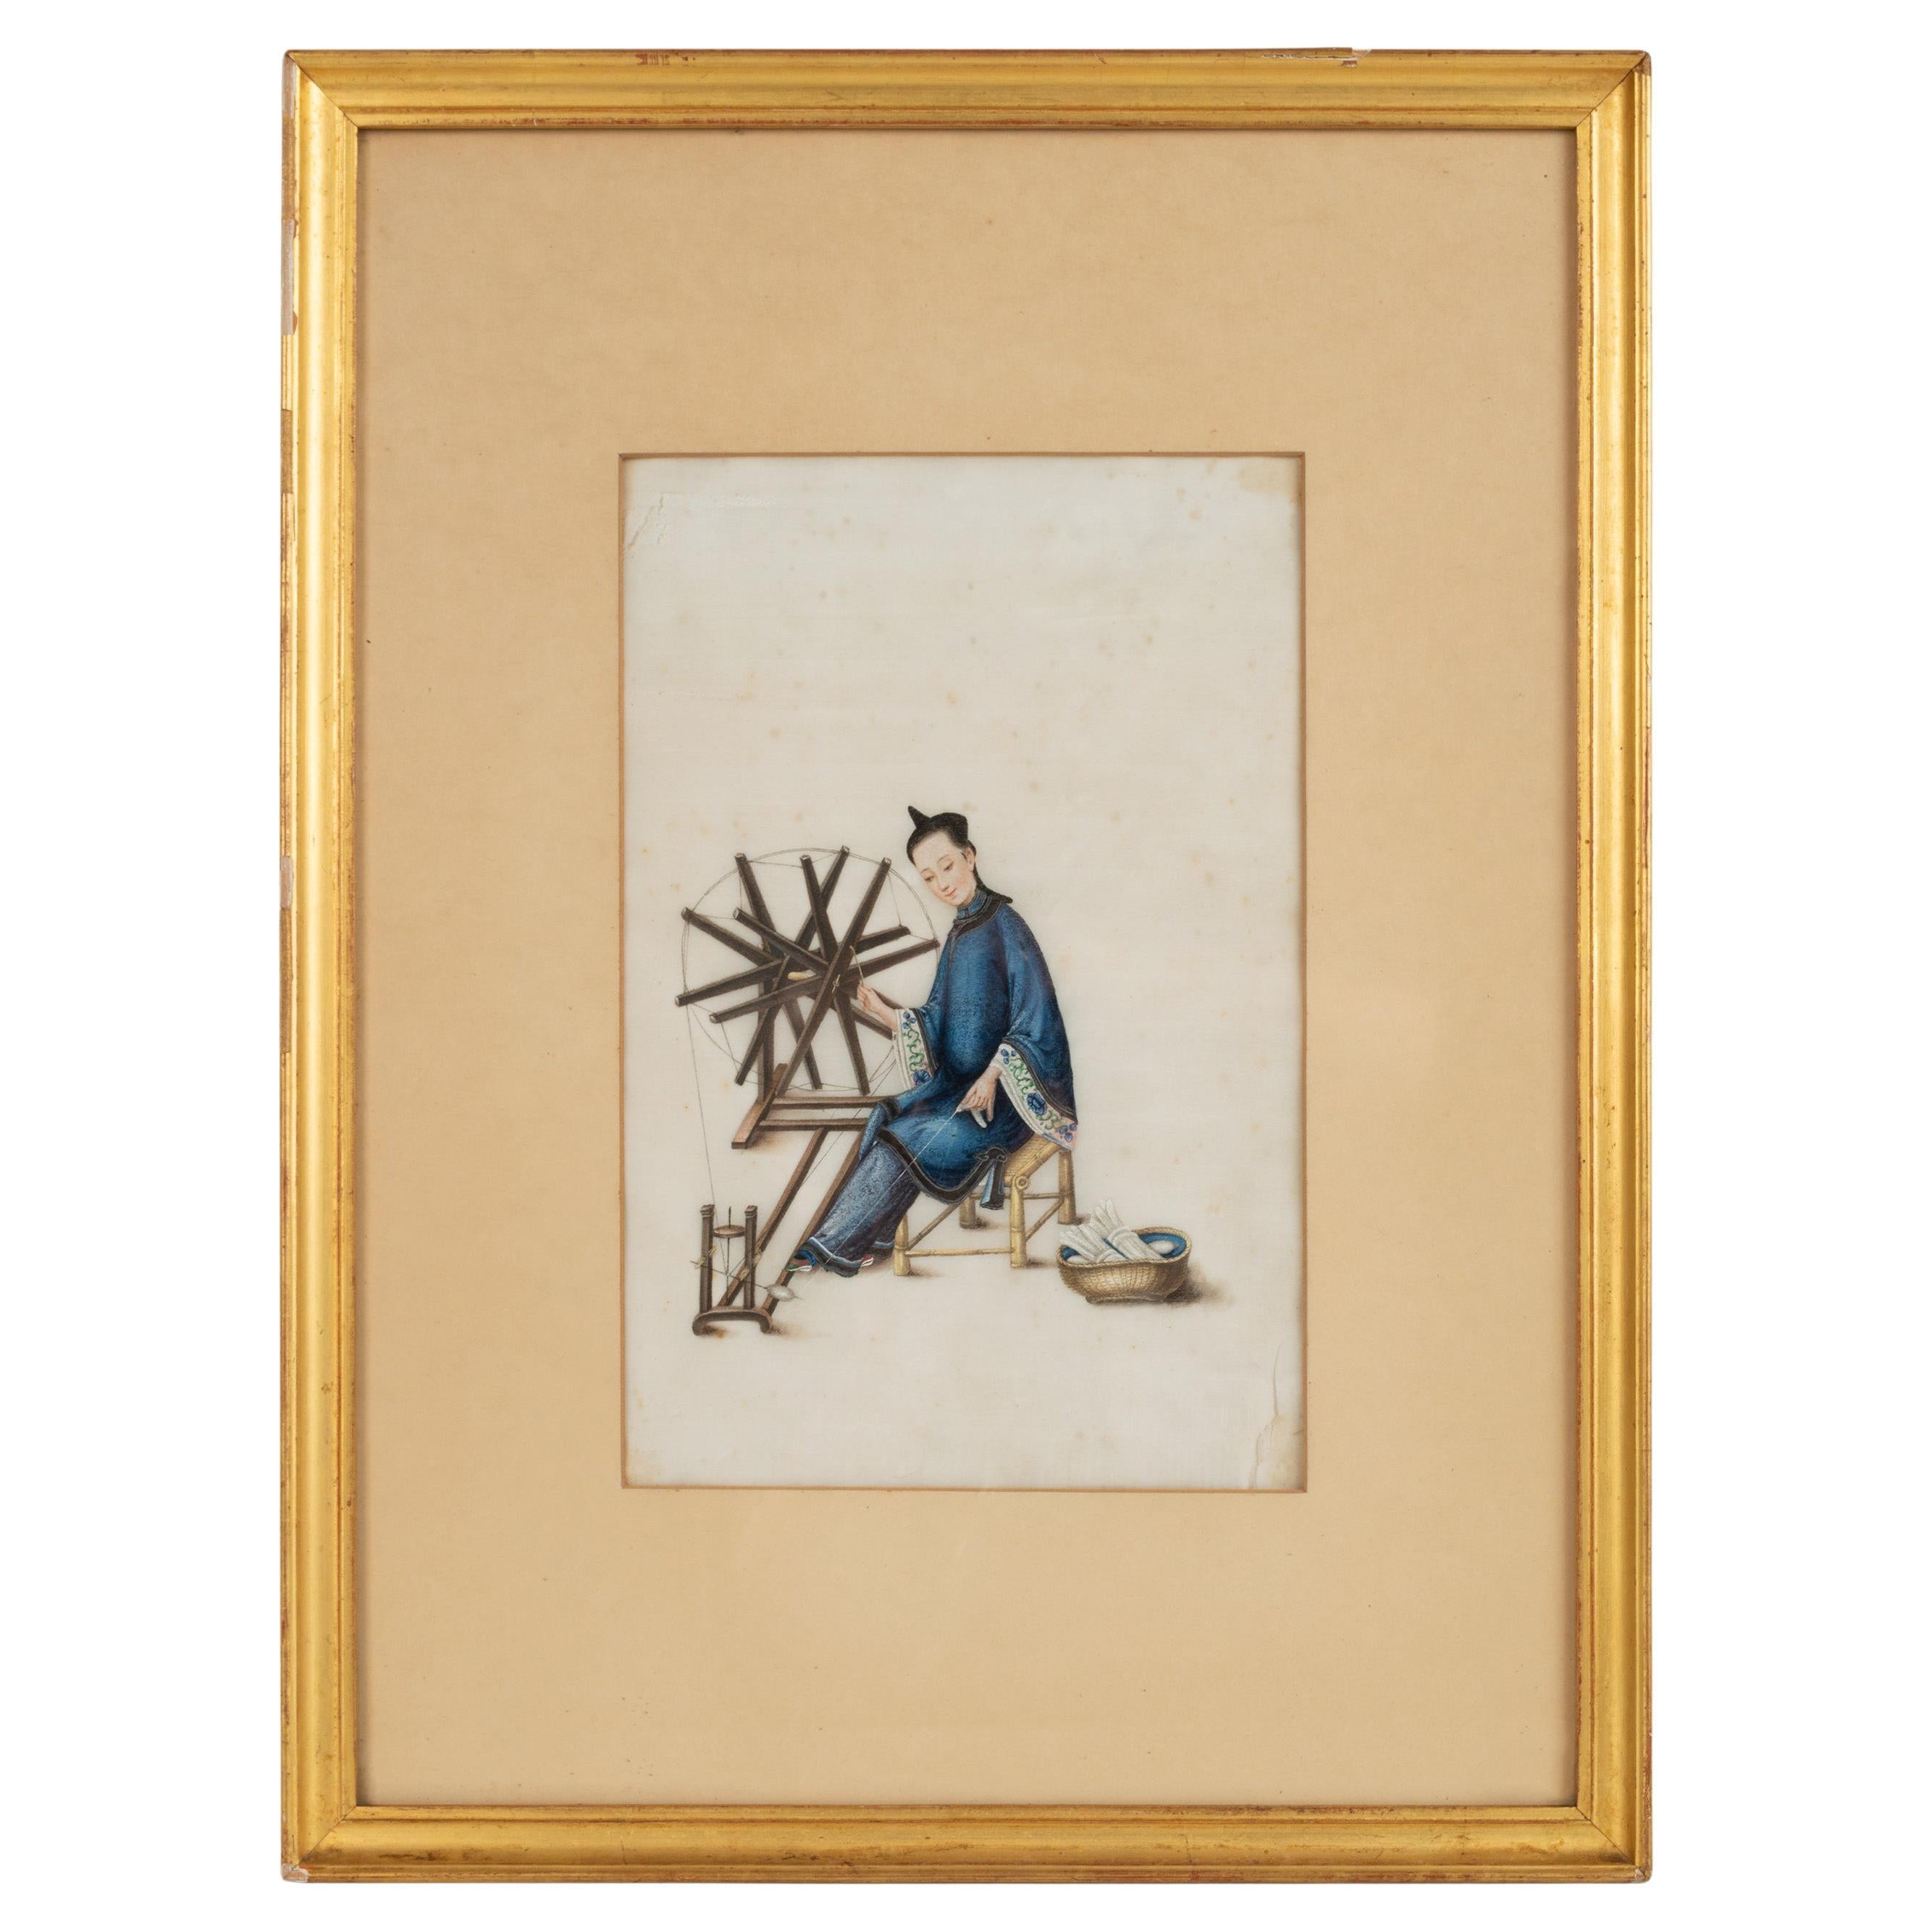 Chinesische Qing-Dynastie Aquarell und Gouache auf Pith-Papier, Kanton um 1835.

Das Bild einer Frau, die webt, fängt das Leben in Kanton ein und zeigt das tägliche Leben im China der Qing-Dynastie. Diese Exportgemälde waren für ihre